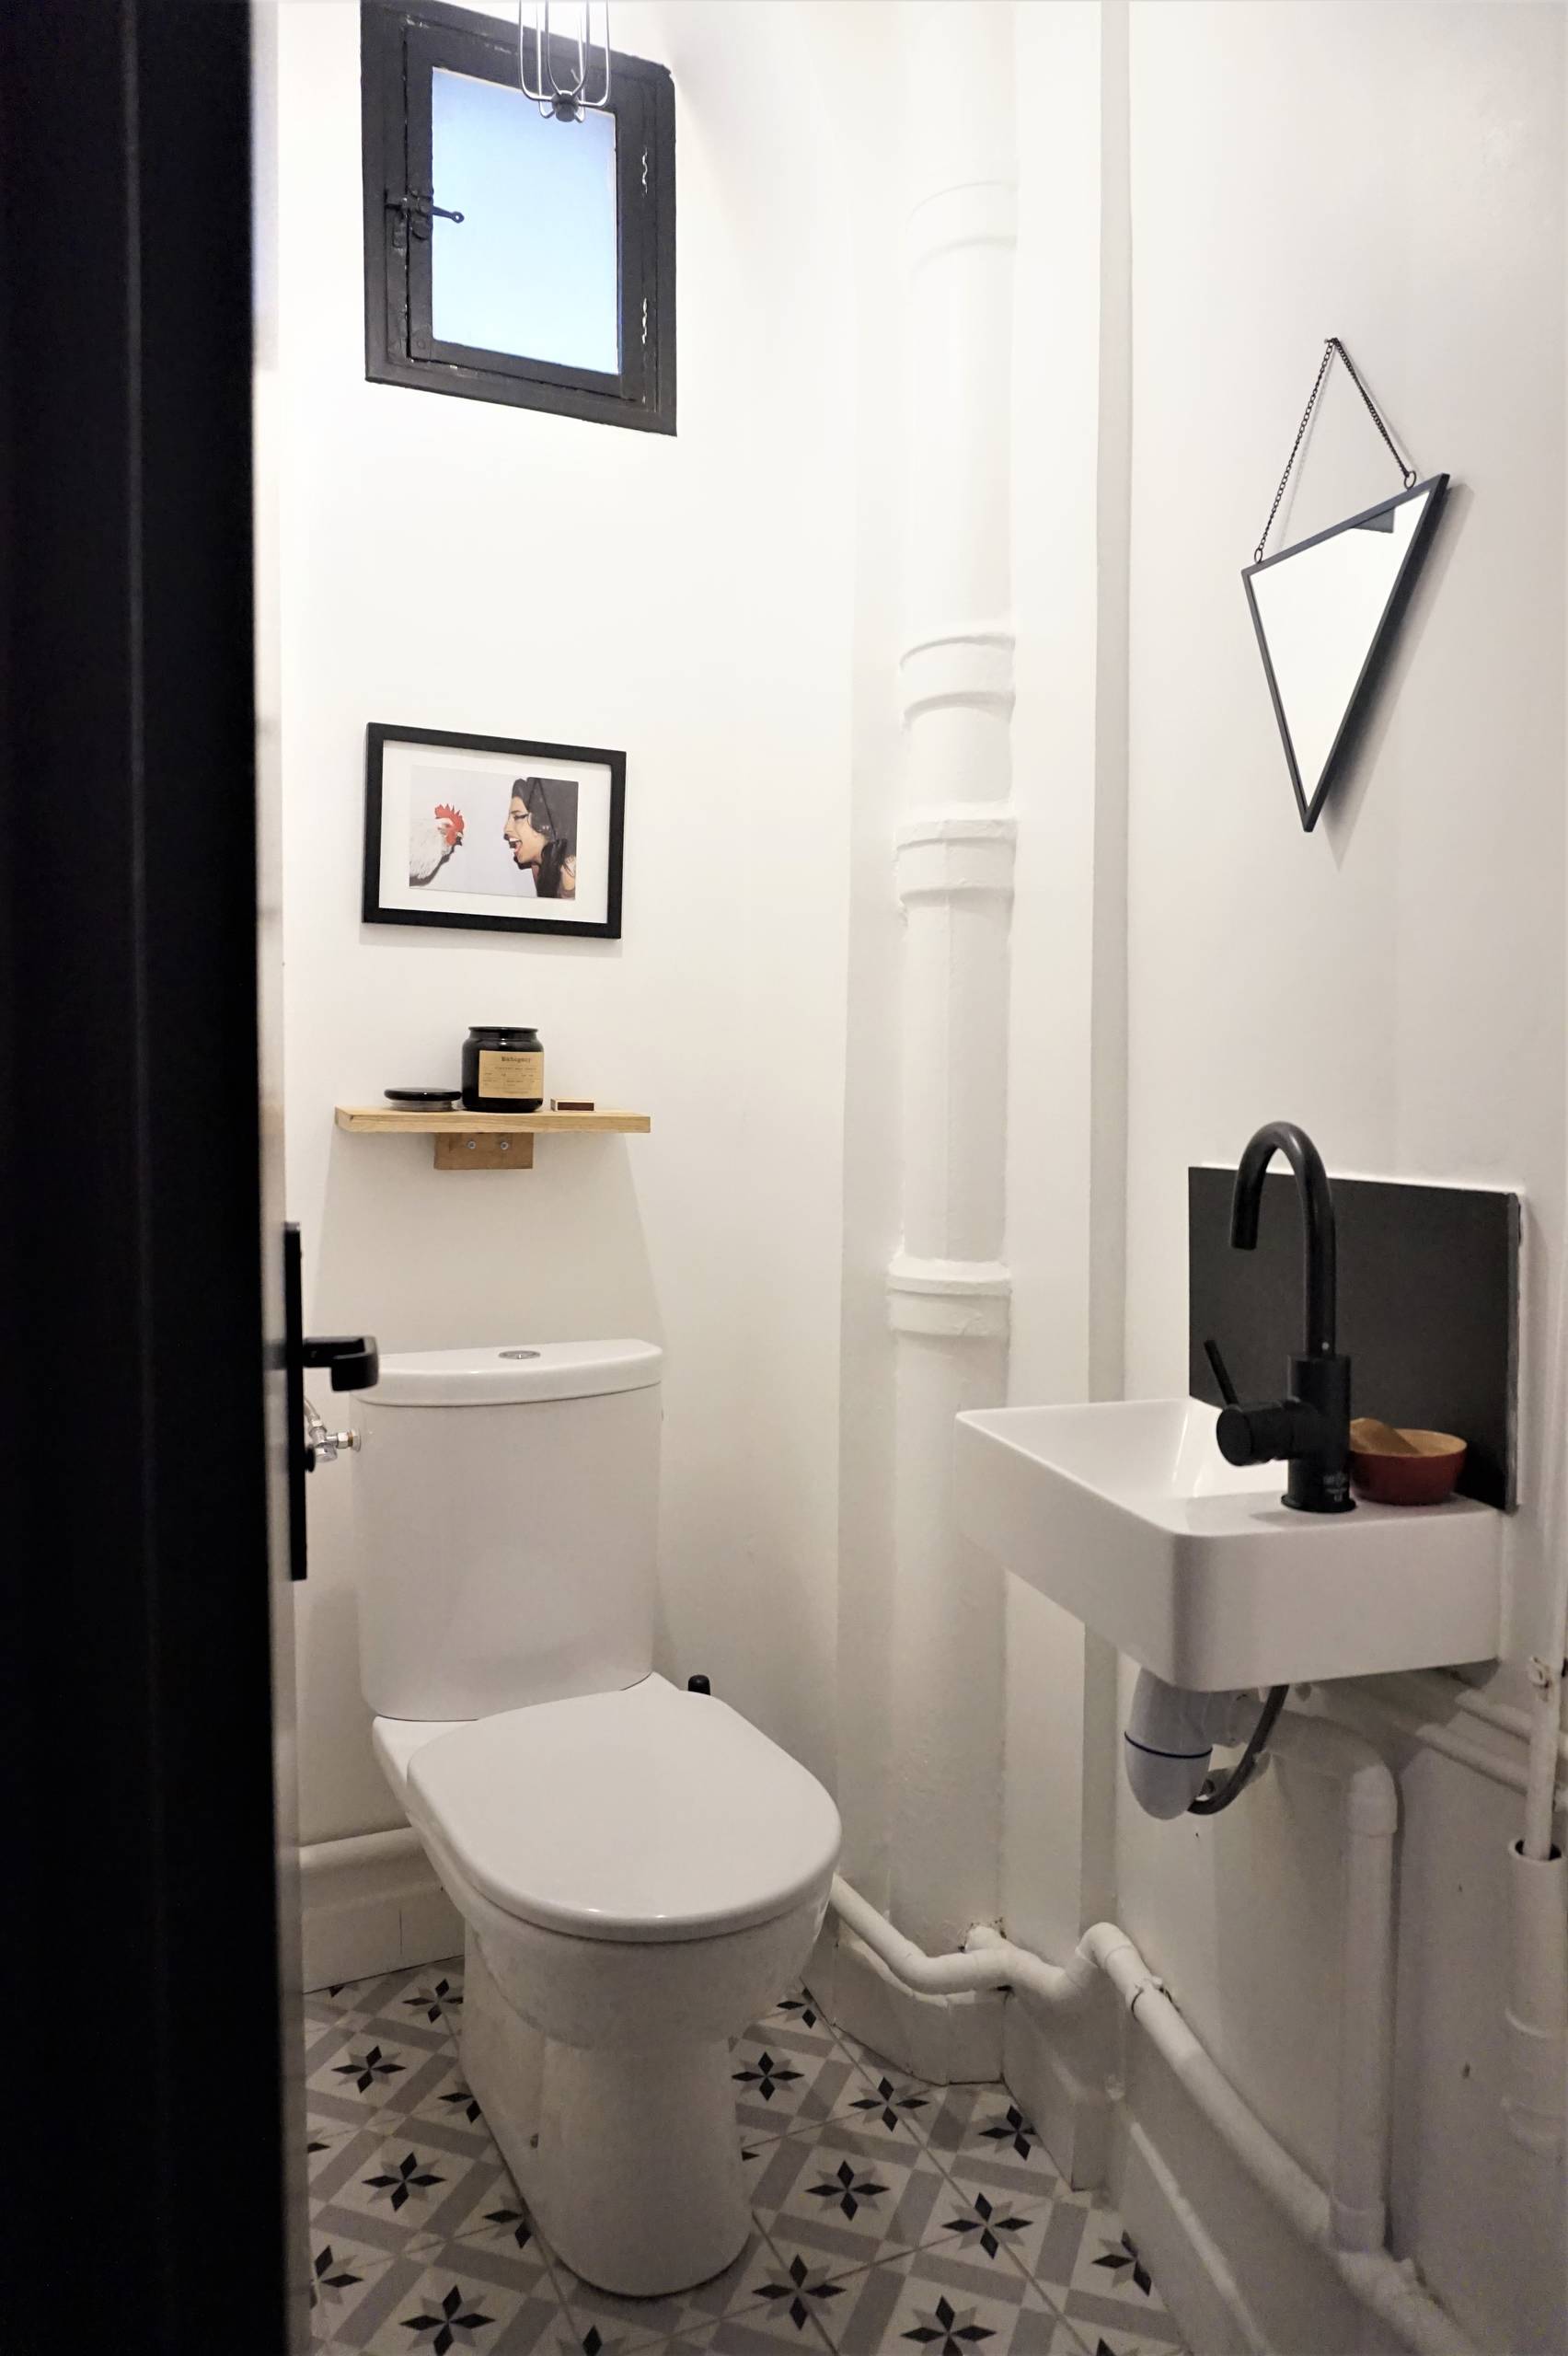 Toilettes : 36 idées pour soigner vos petits coins